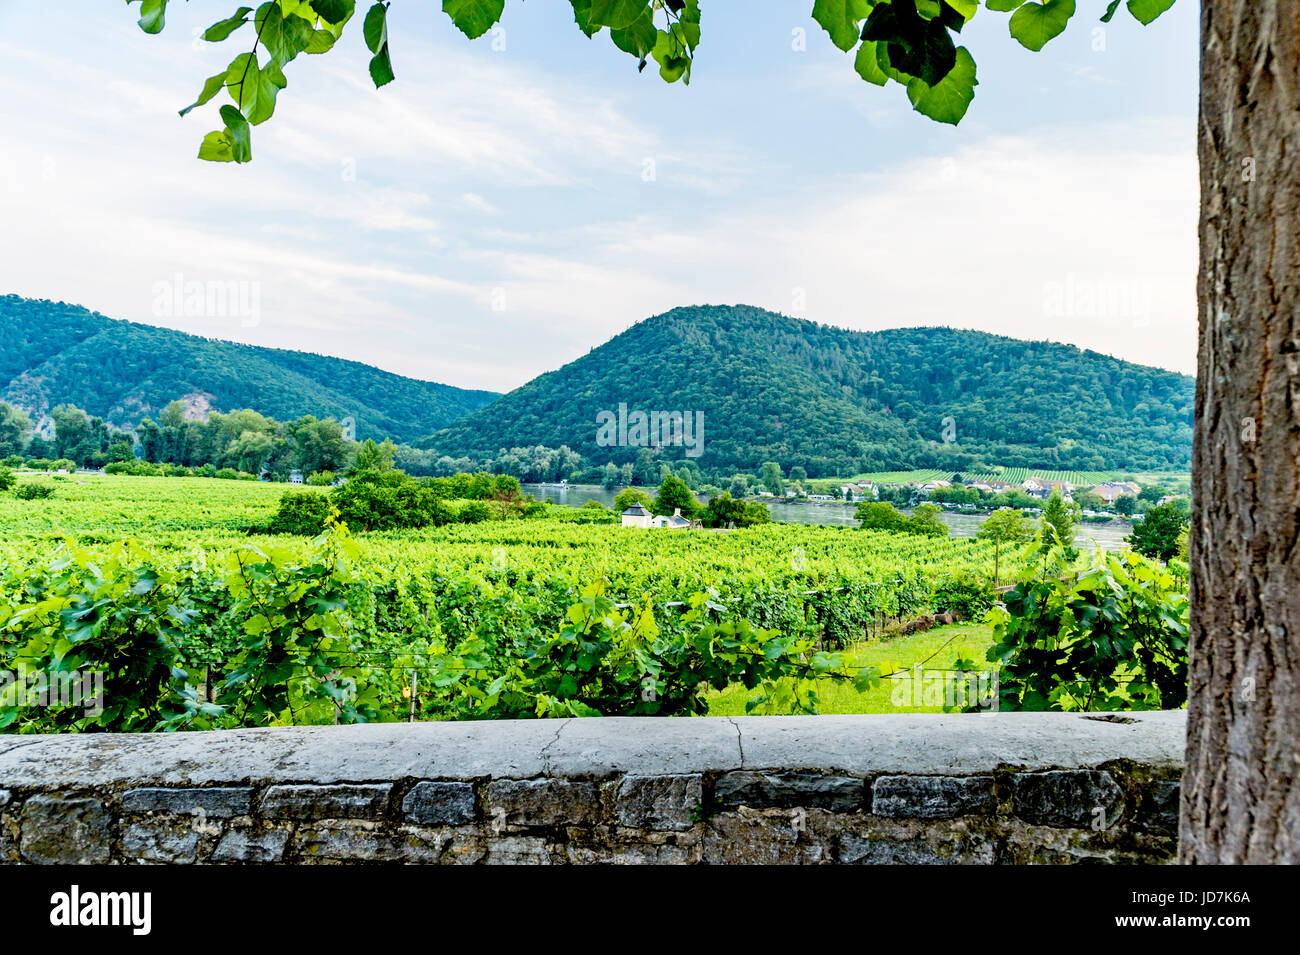 Weinanbau in der Wachau nahe Dürnstein, Österreich; vineyard cultivation near Duernstein, austria Stock Photo